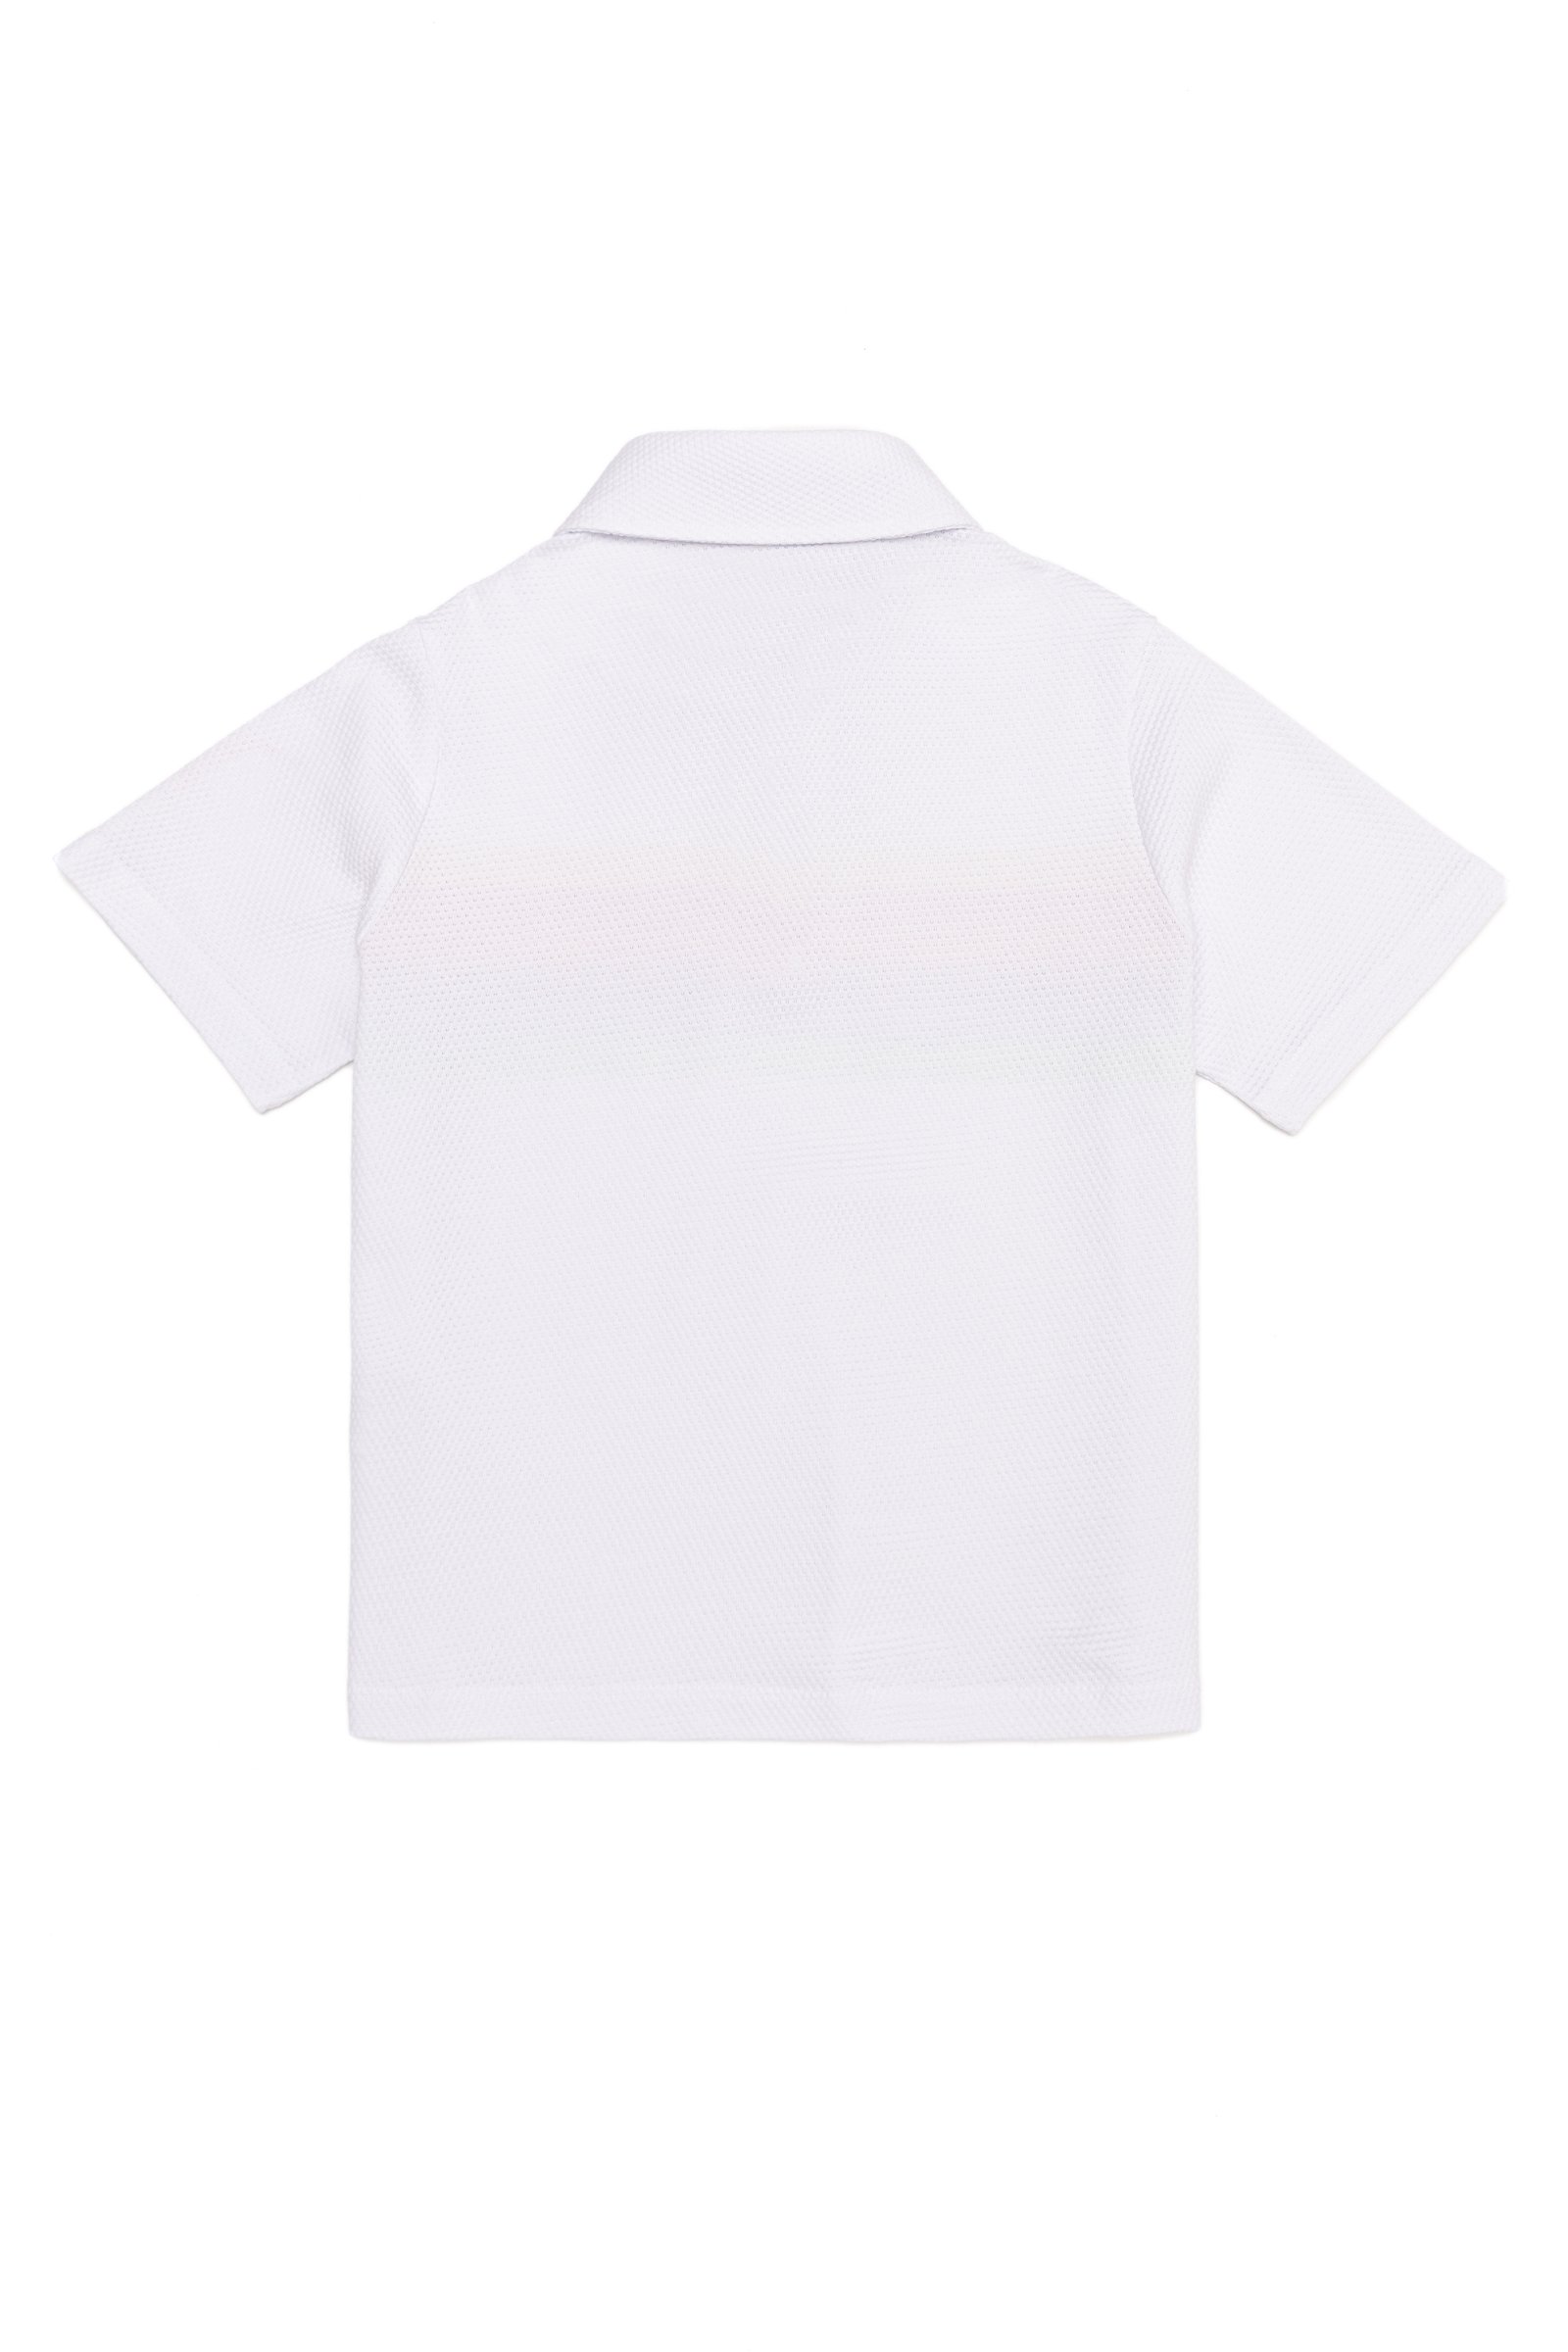 تی شرت  سفید  استاندارد فیت  دخترانه یو اس پولو | US POLO ASSN